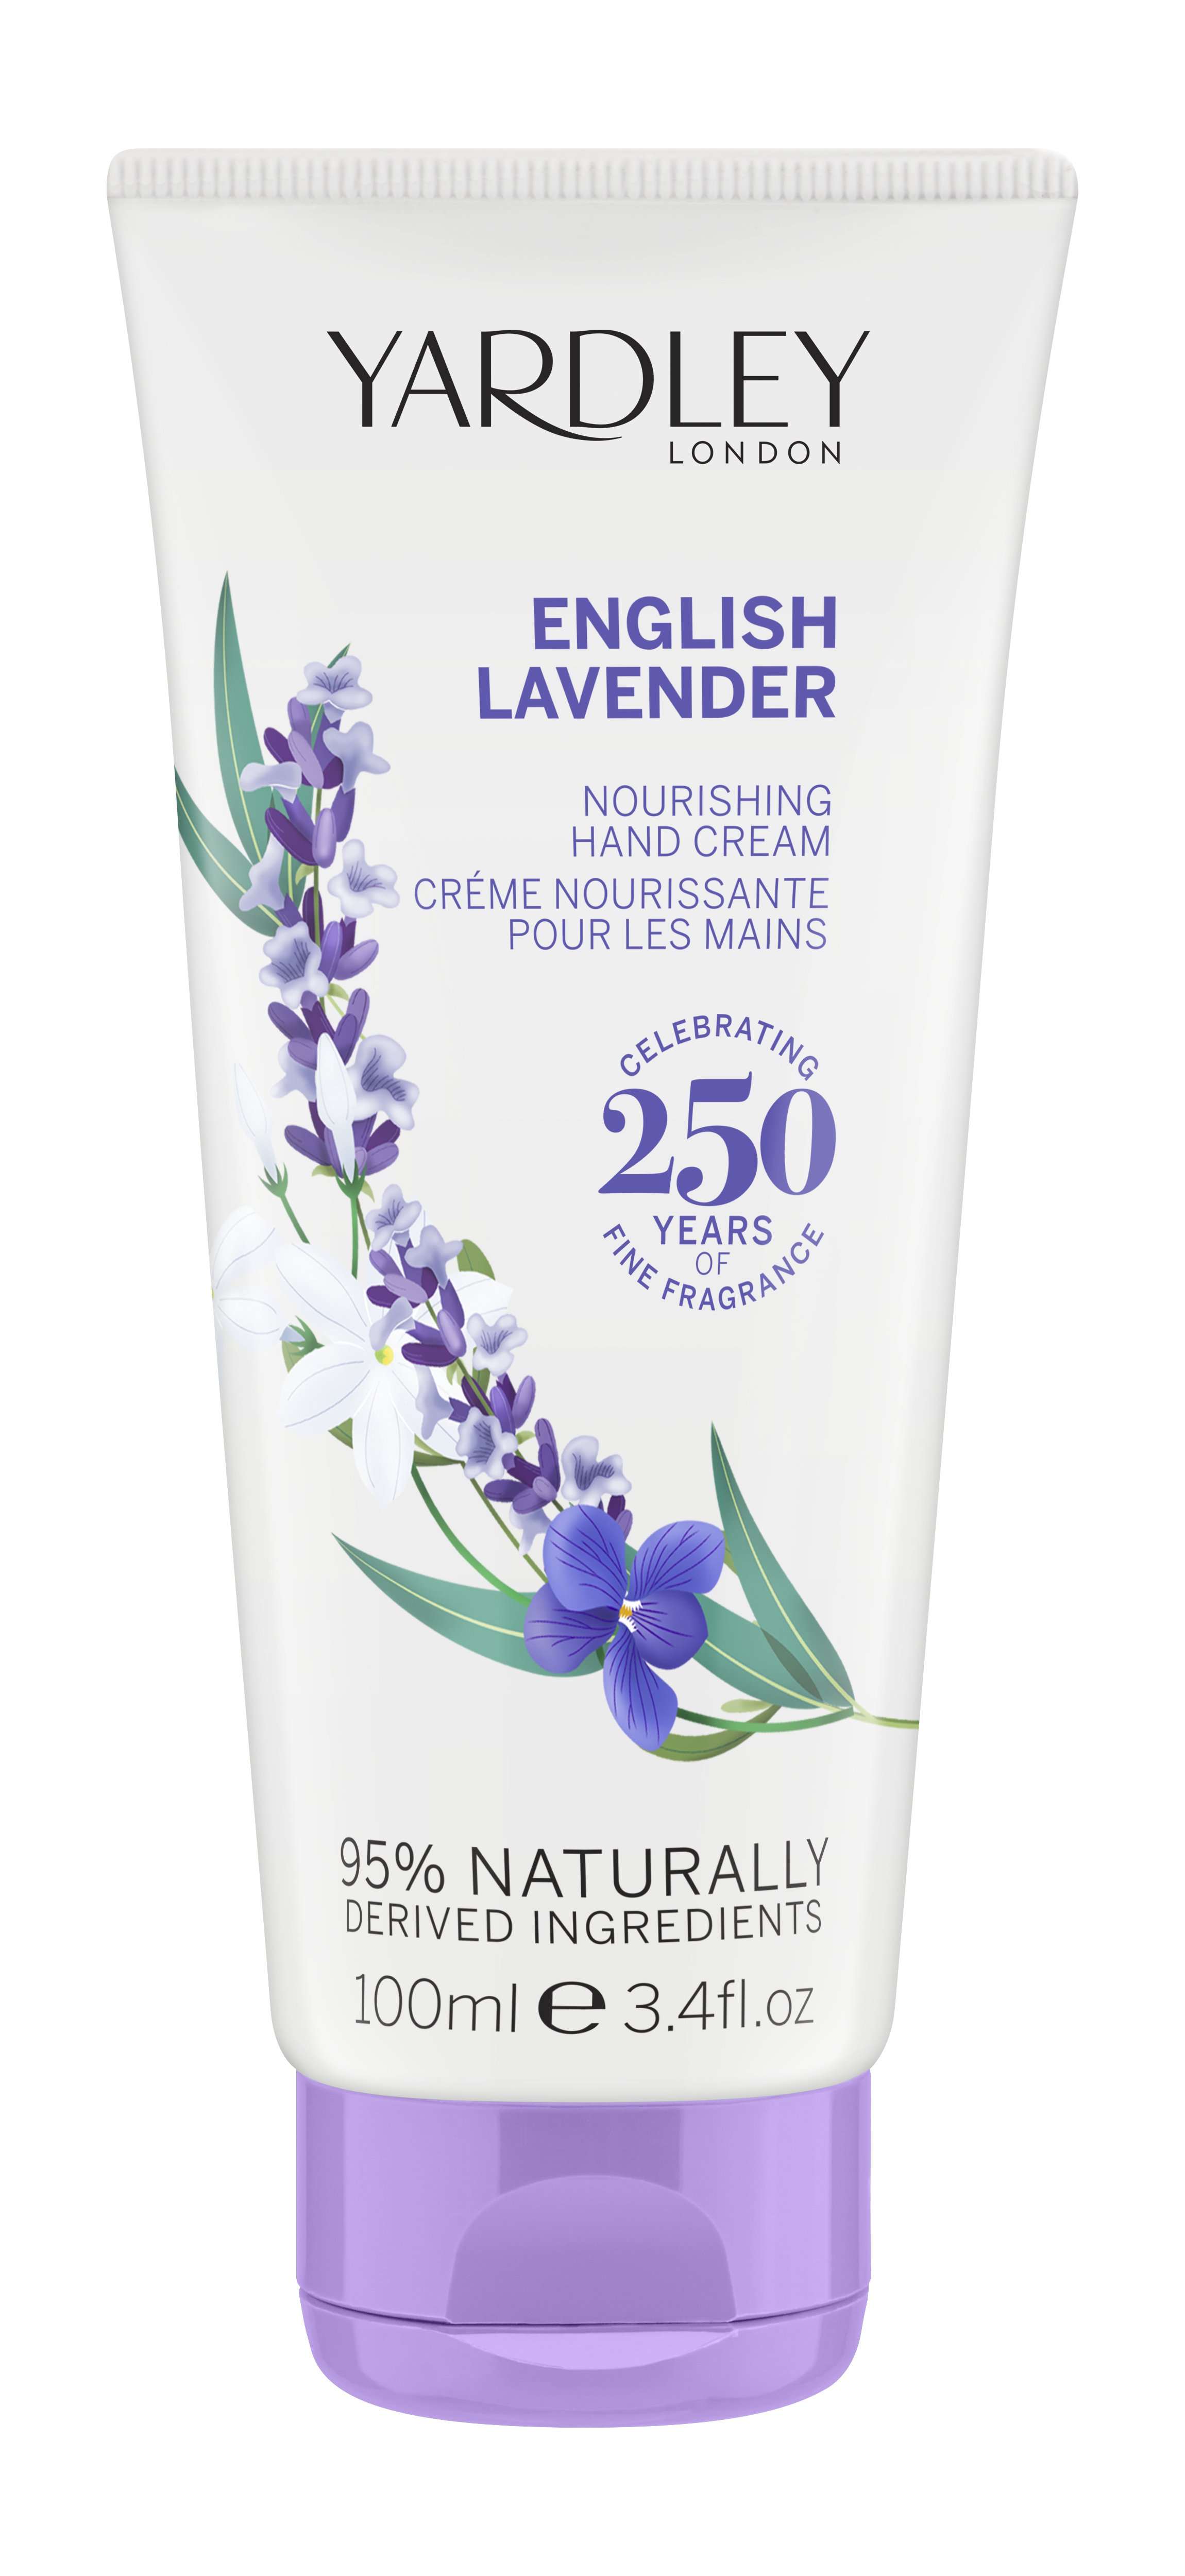 Yardley English Lavender 100ml Hand And Nail Cream